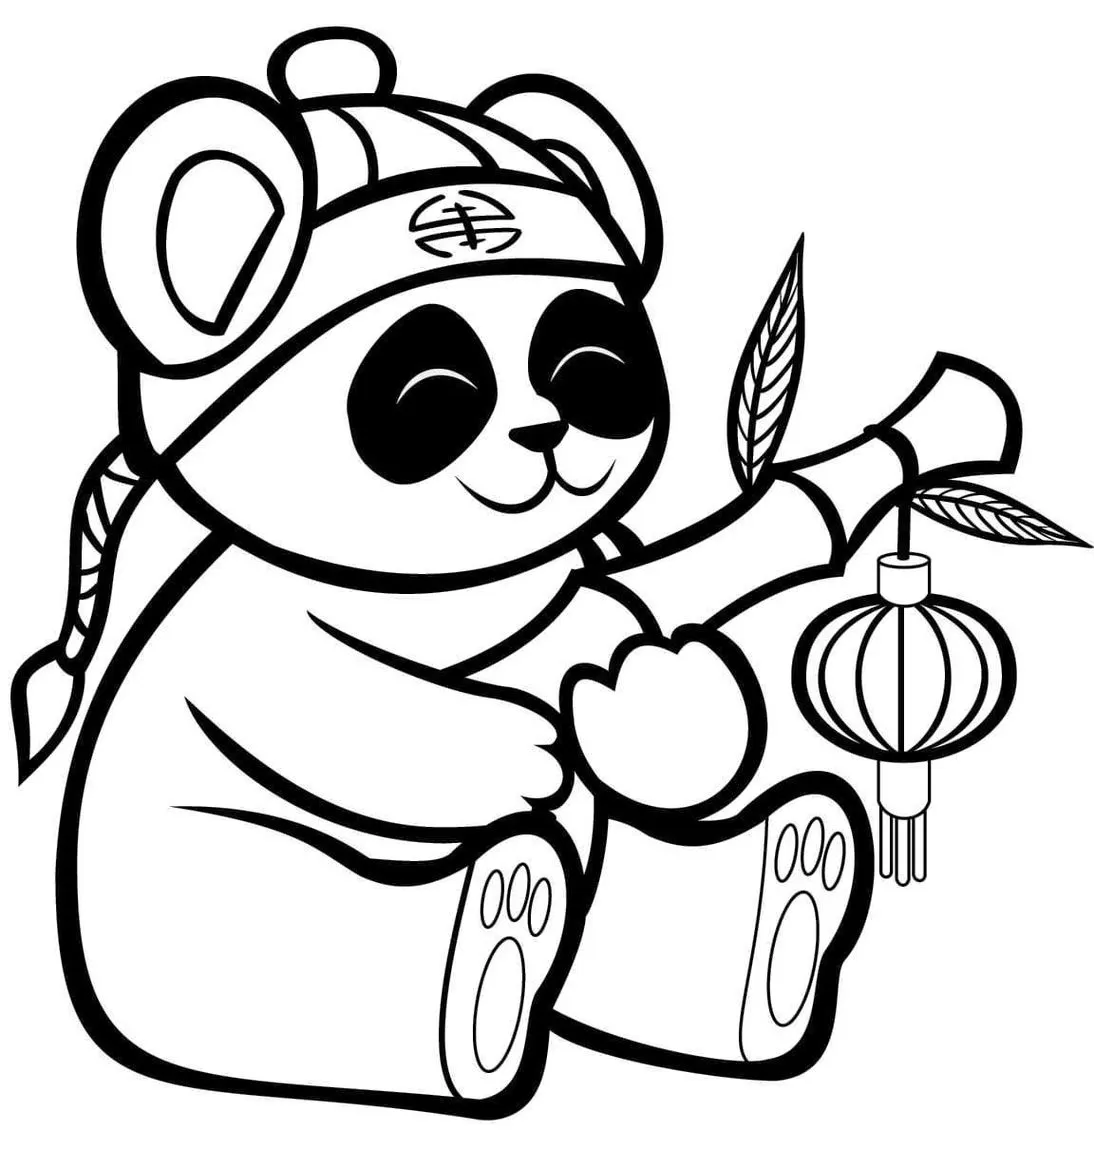 Desenho Para Colorir panda - Imagens Grátis Para Imprimir - img 27865